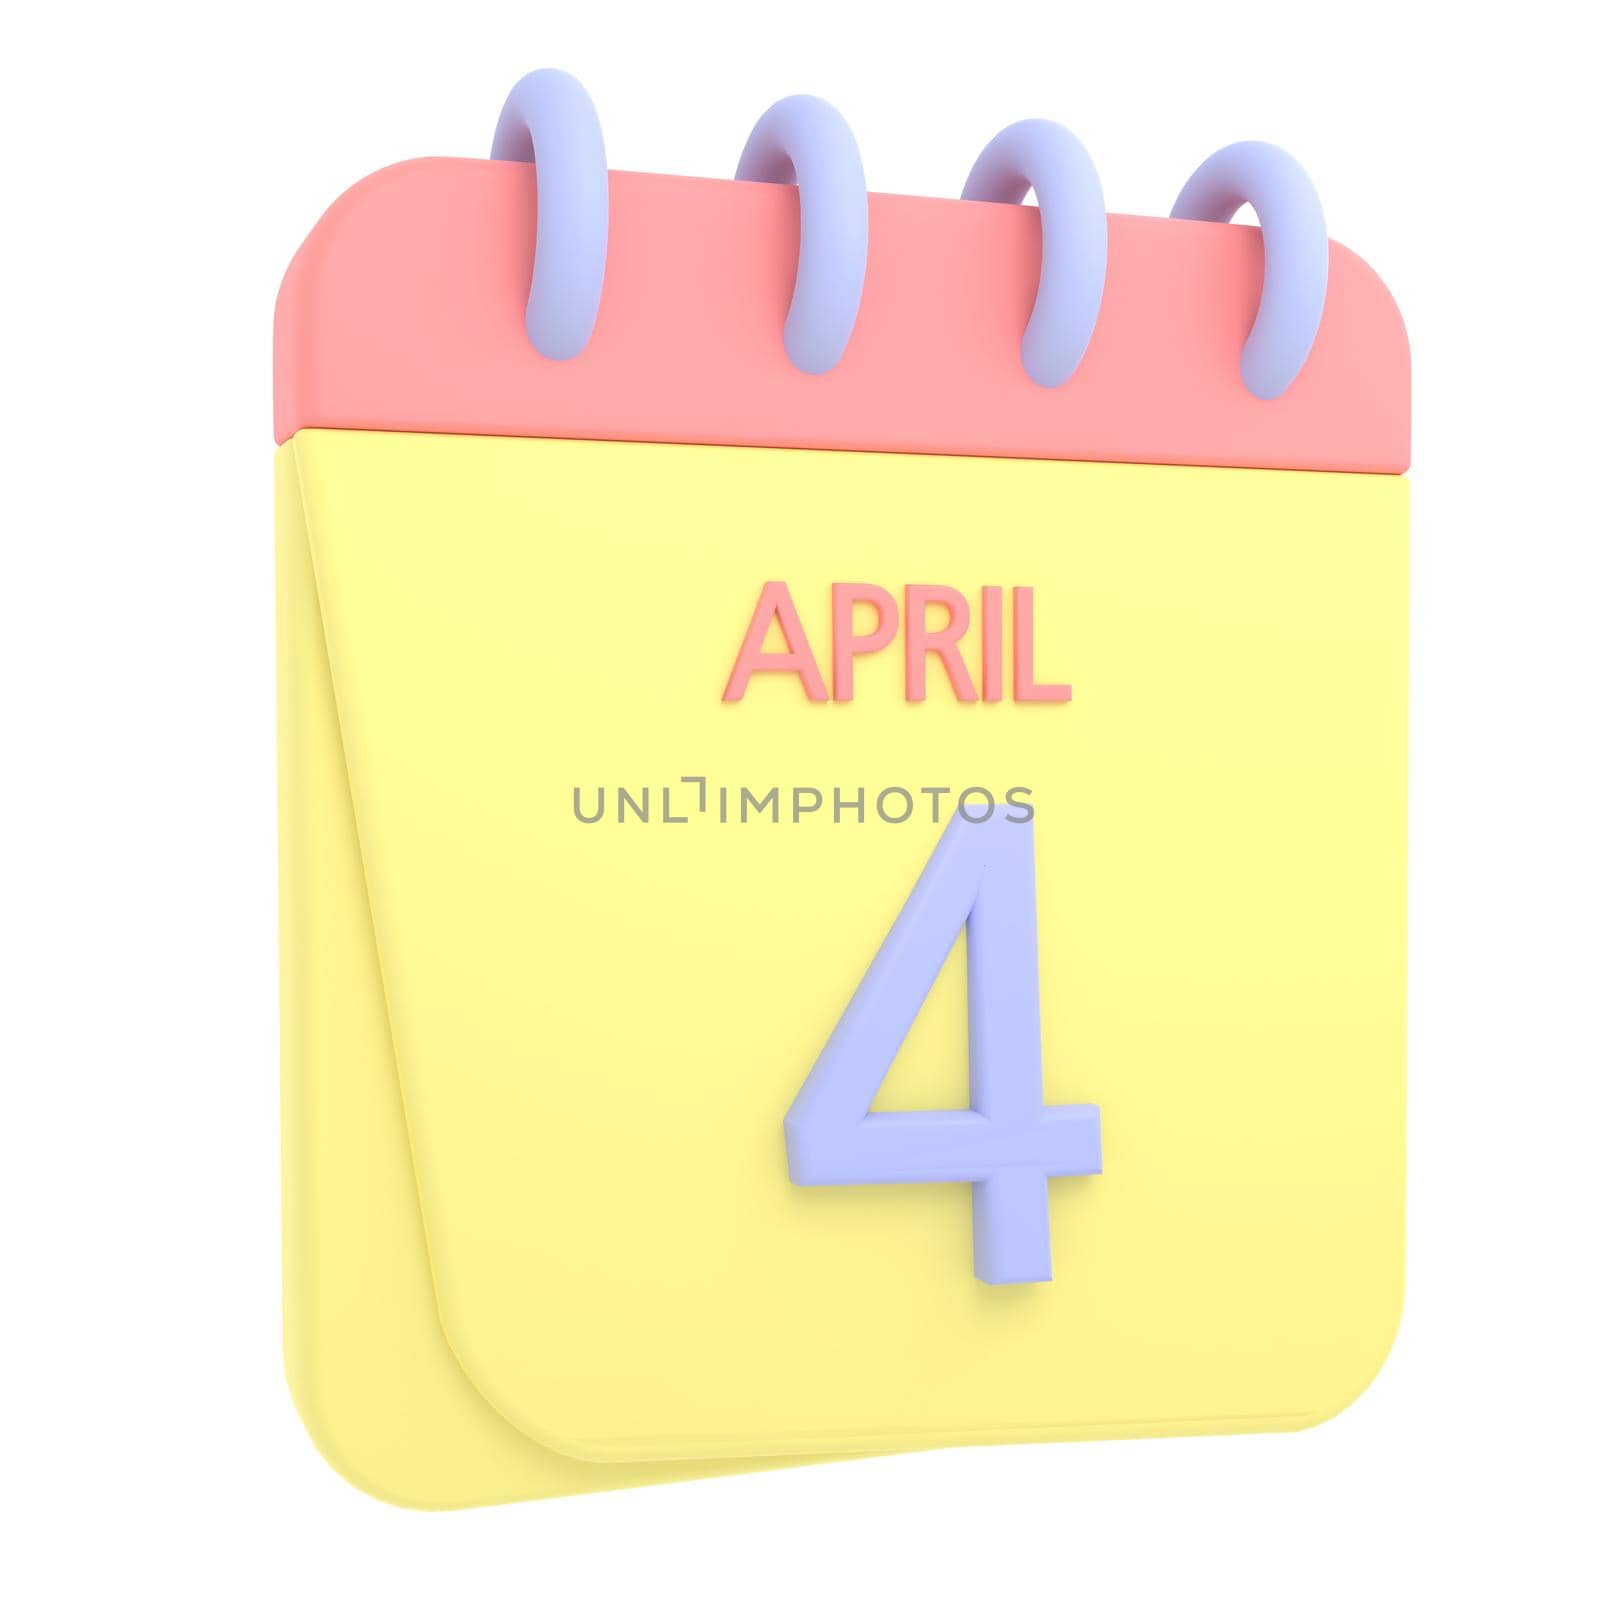 4th April 3D calendar icon by AnnaMarin